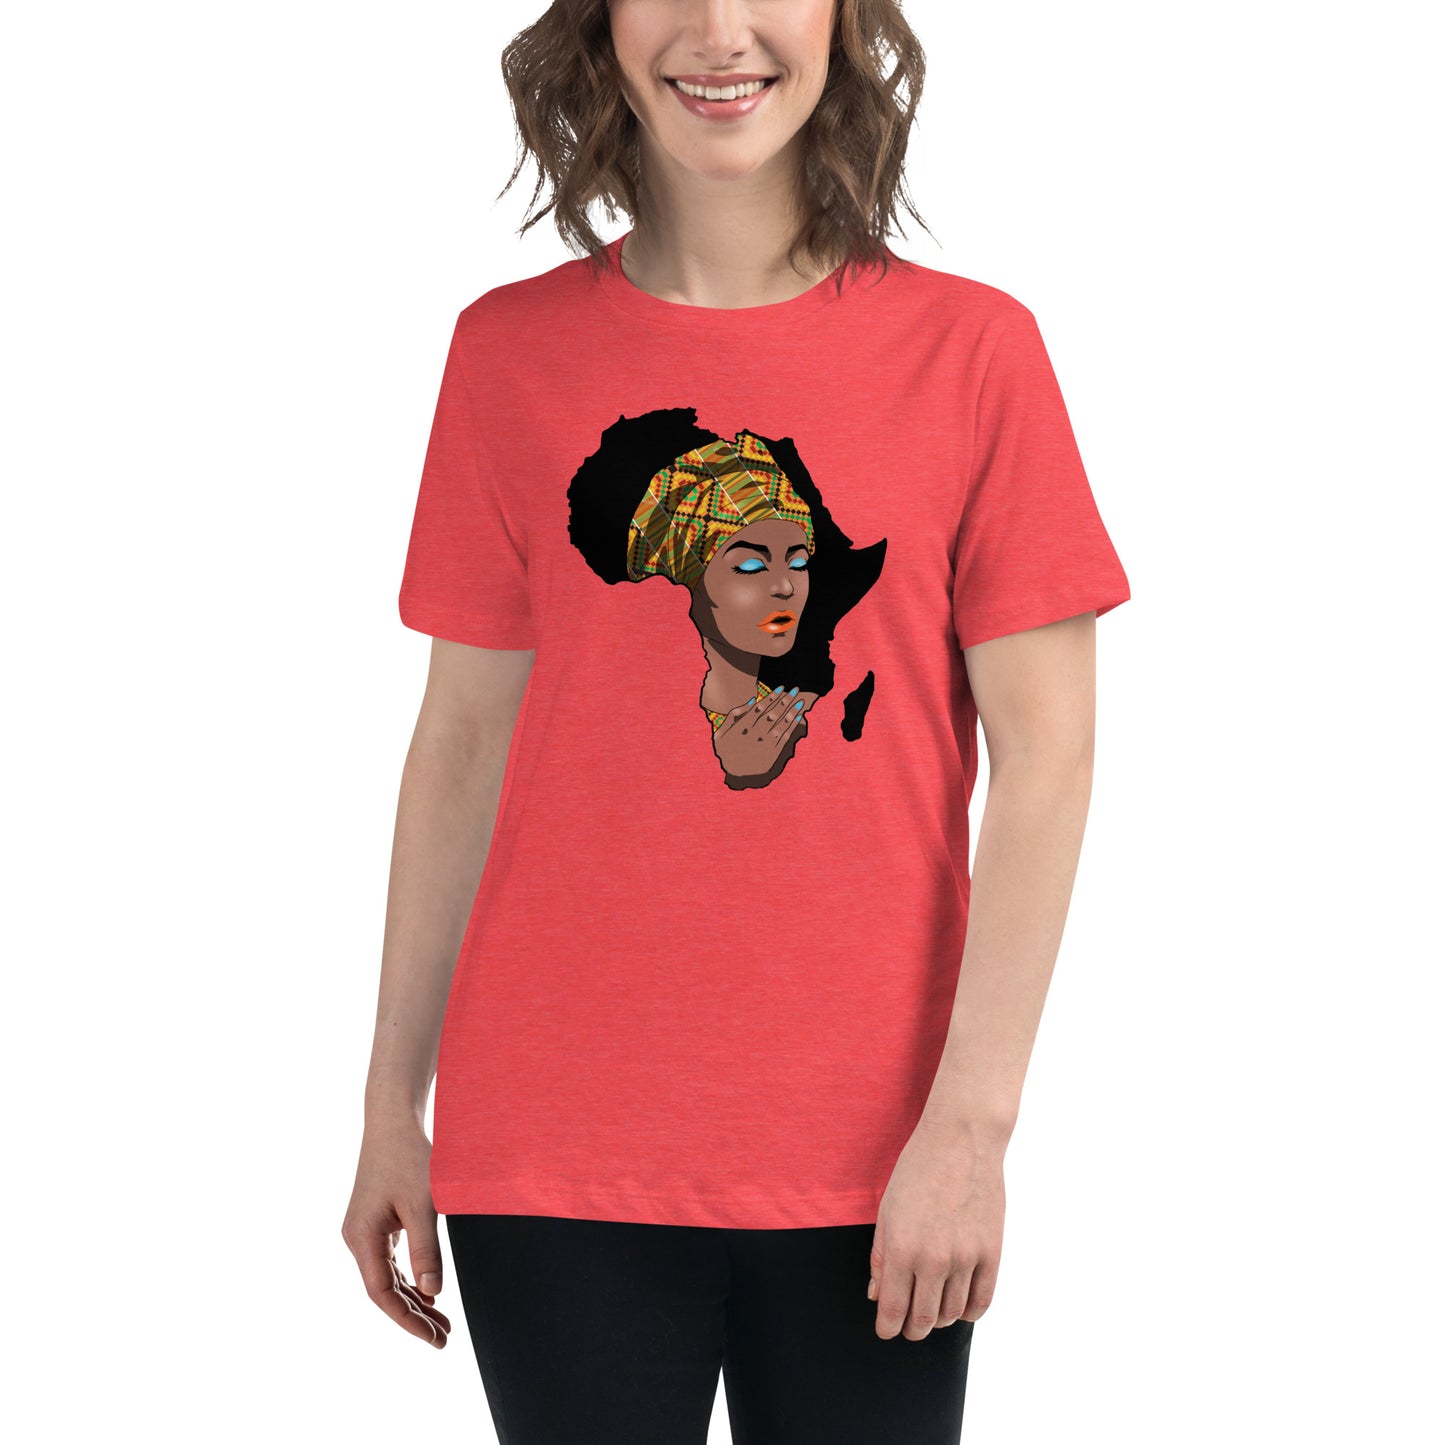 loose t-shirt women africa